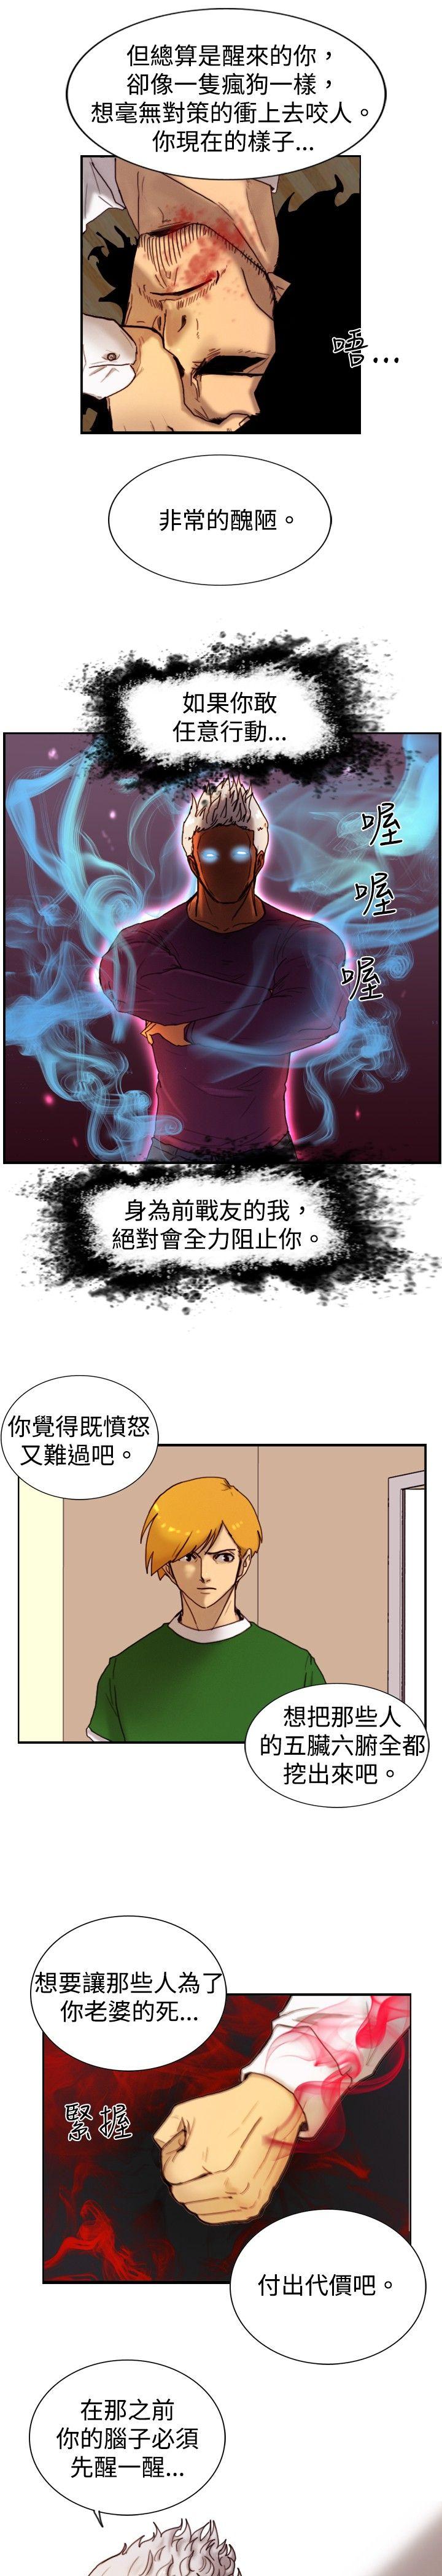 韩国污漫画 覺醒(完結) 第11话证据 17